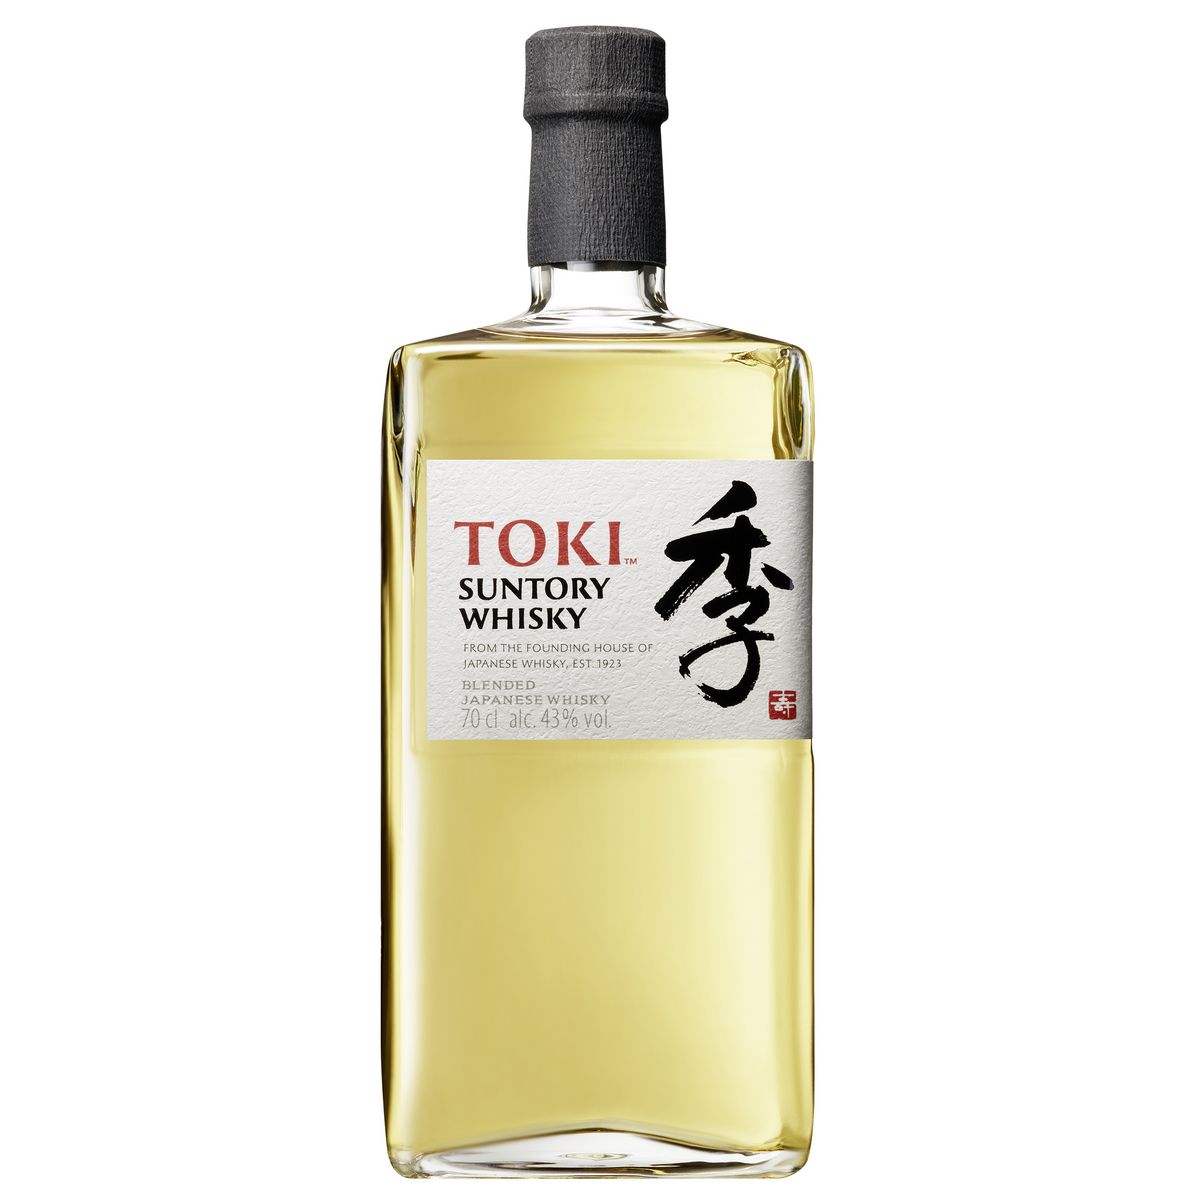 TOKI SUNTORY Whisky japonais blended malt 43% 70cl